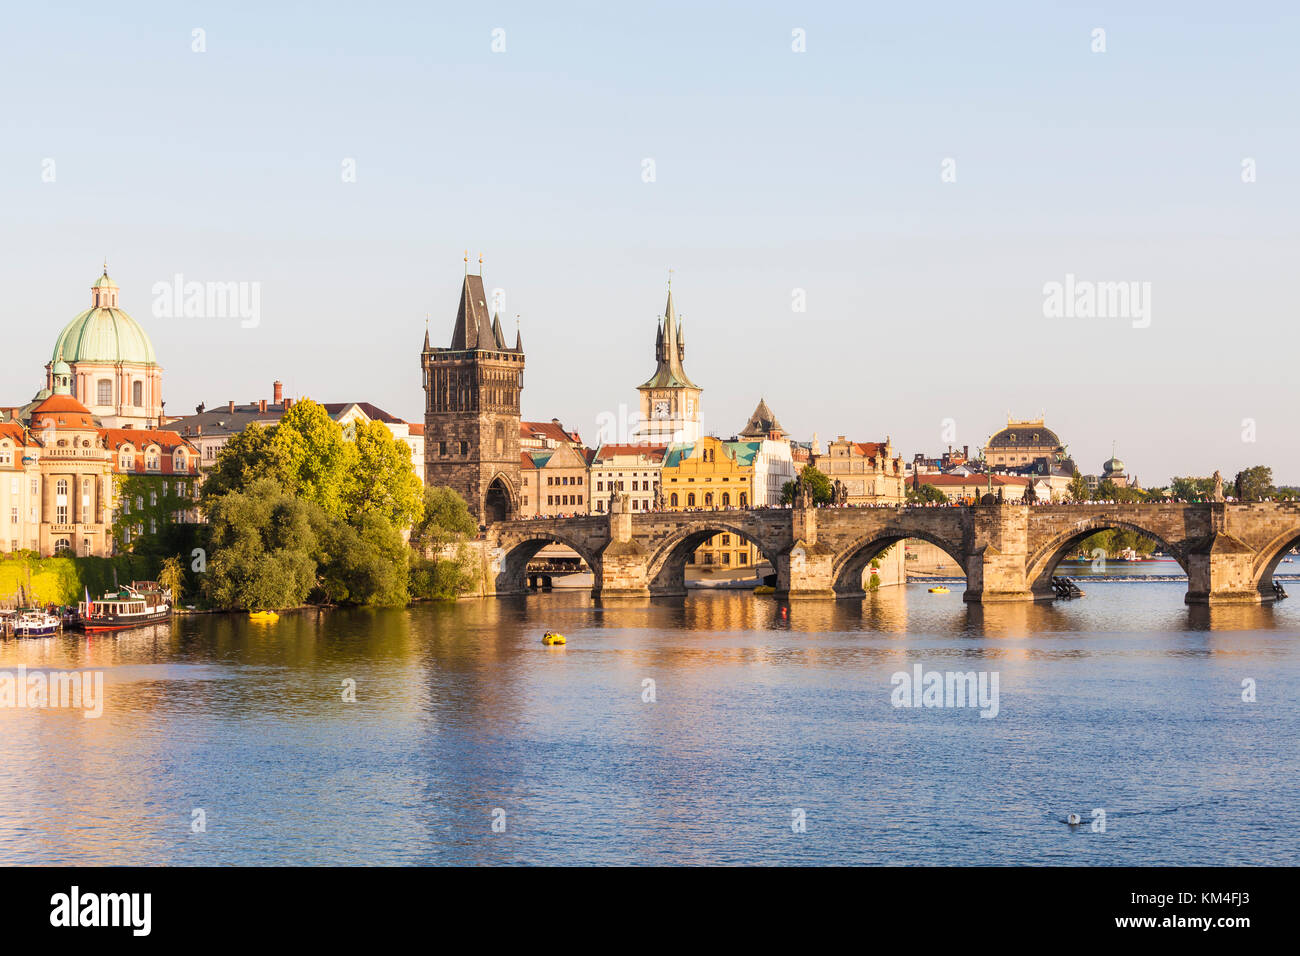 Tschechien, Prag, Altstadt, Moldava, Karlsbrücke, Altstädter Brückenturm Foto Stock